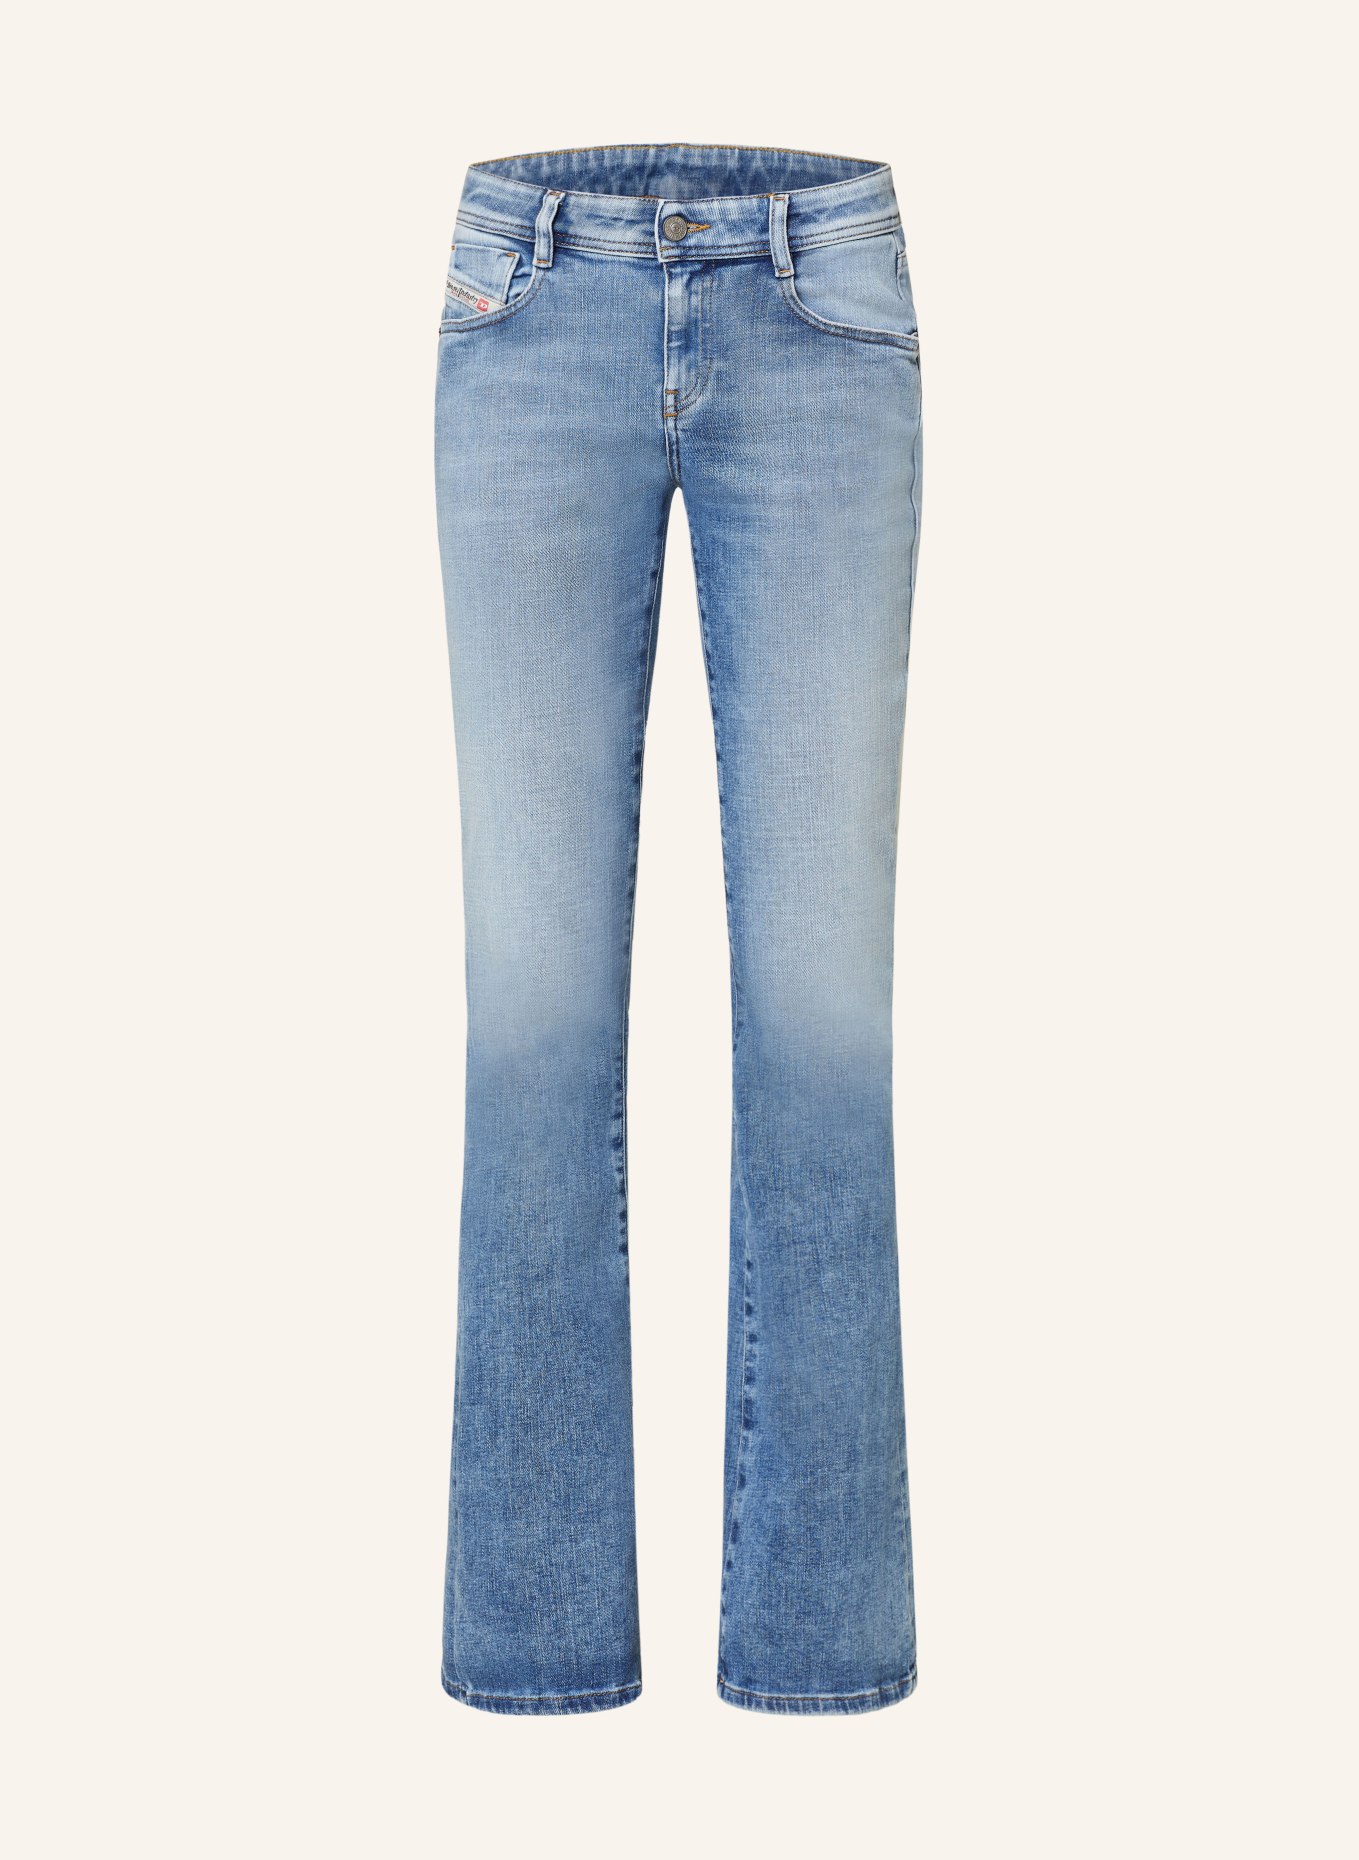 DIESEL Bootcut jeans 1969 D-EBBEY, Color: 01 (Image 1)